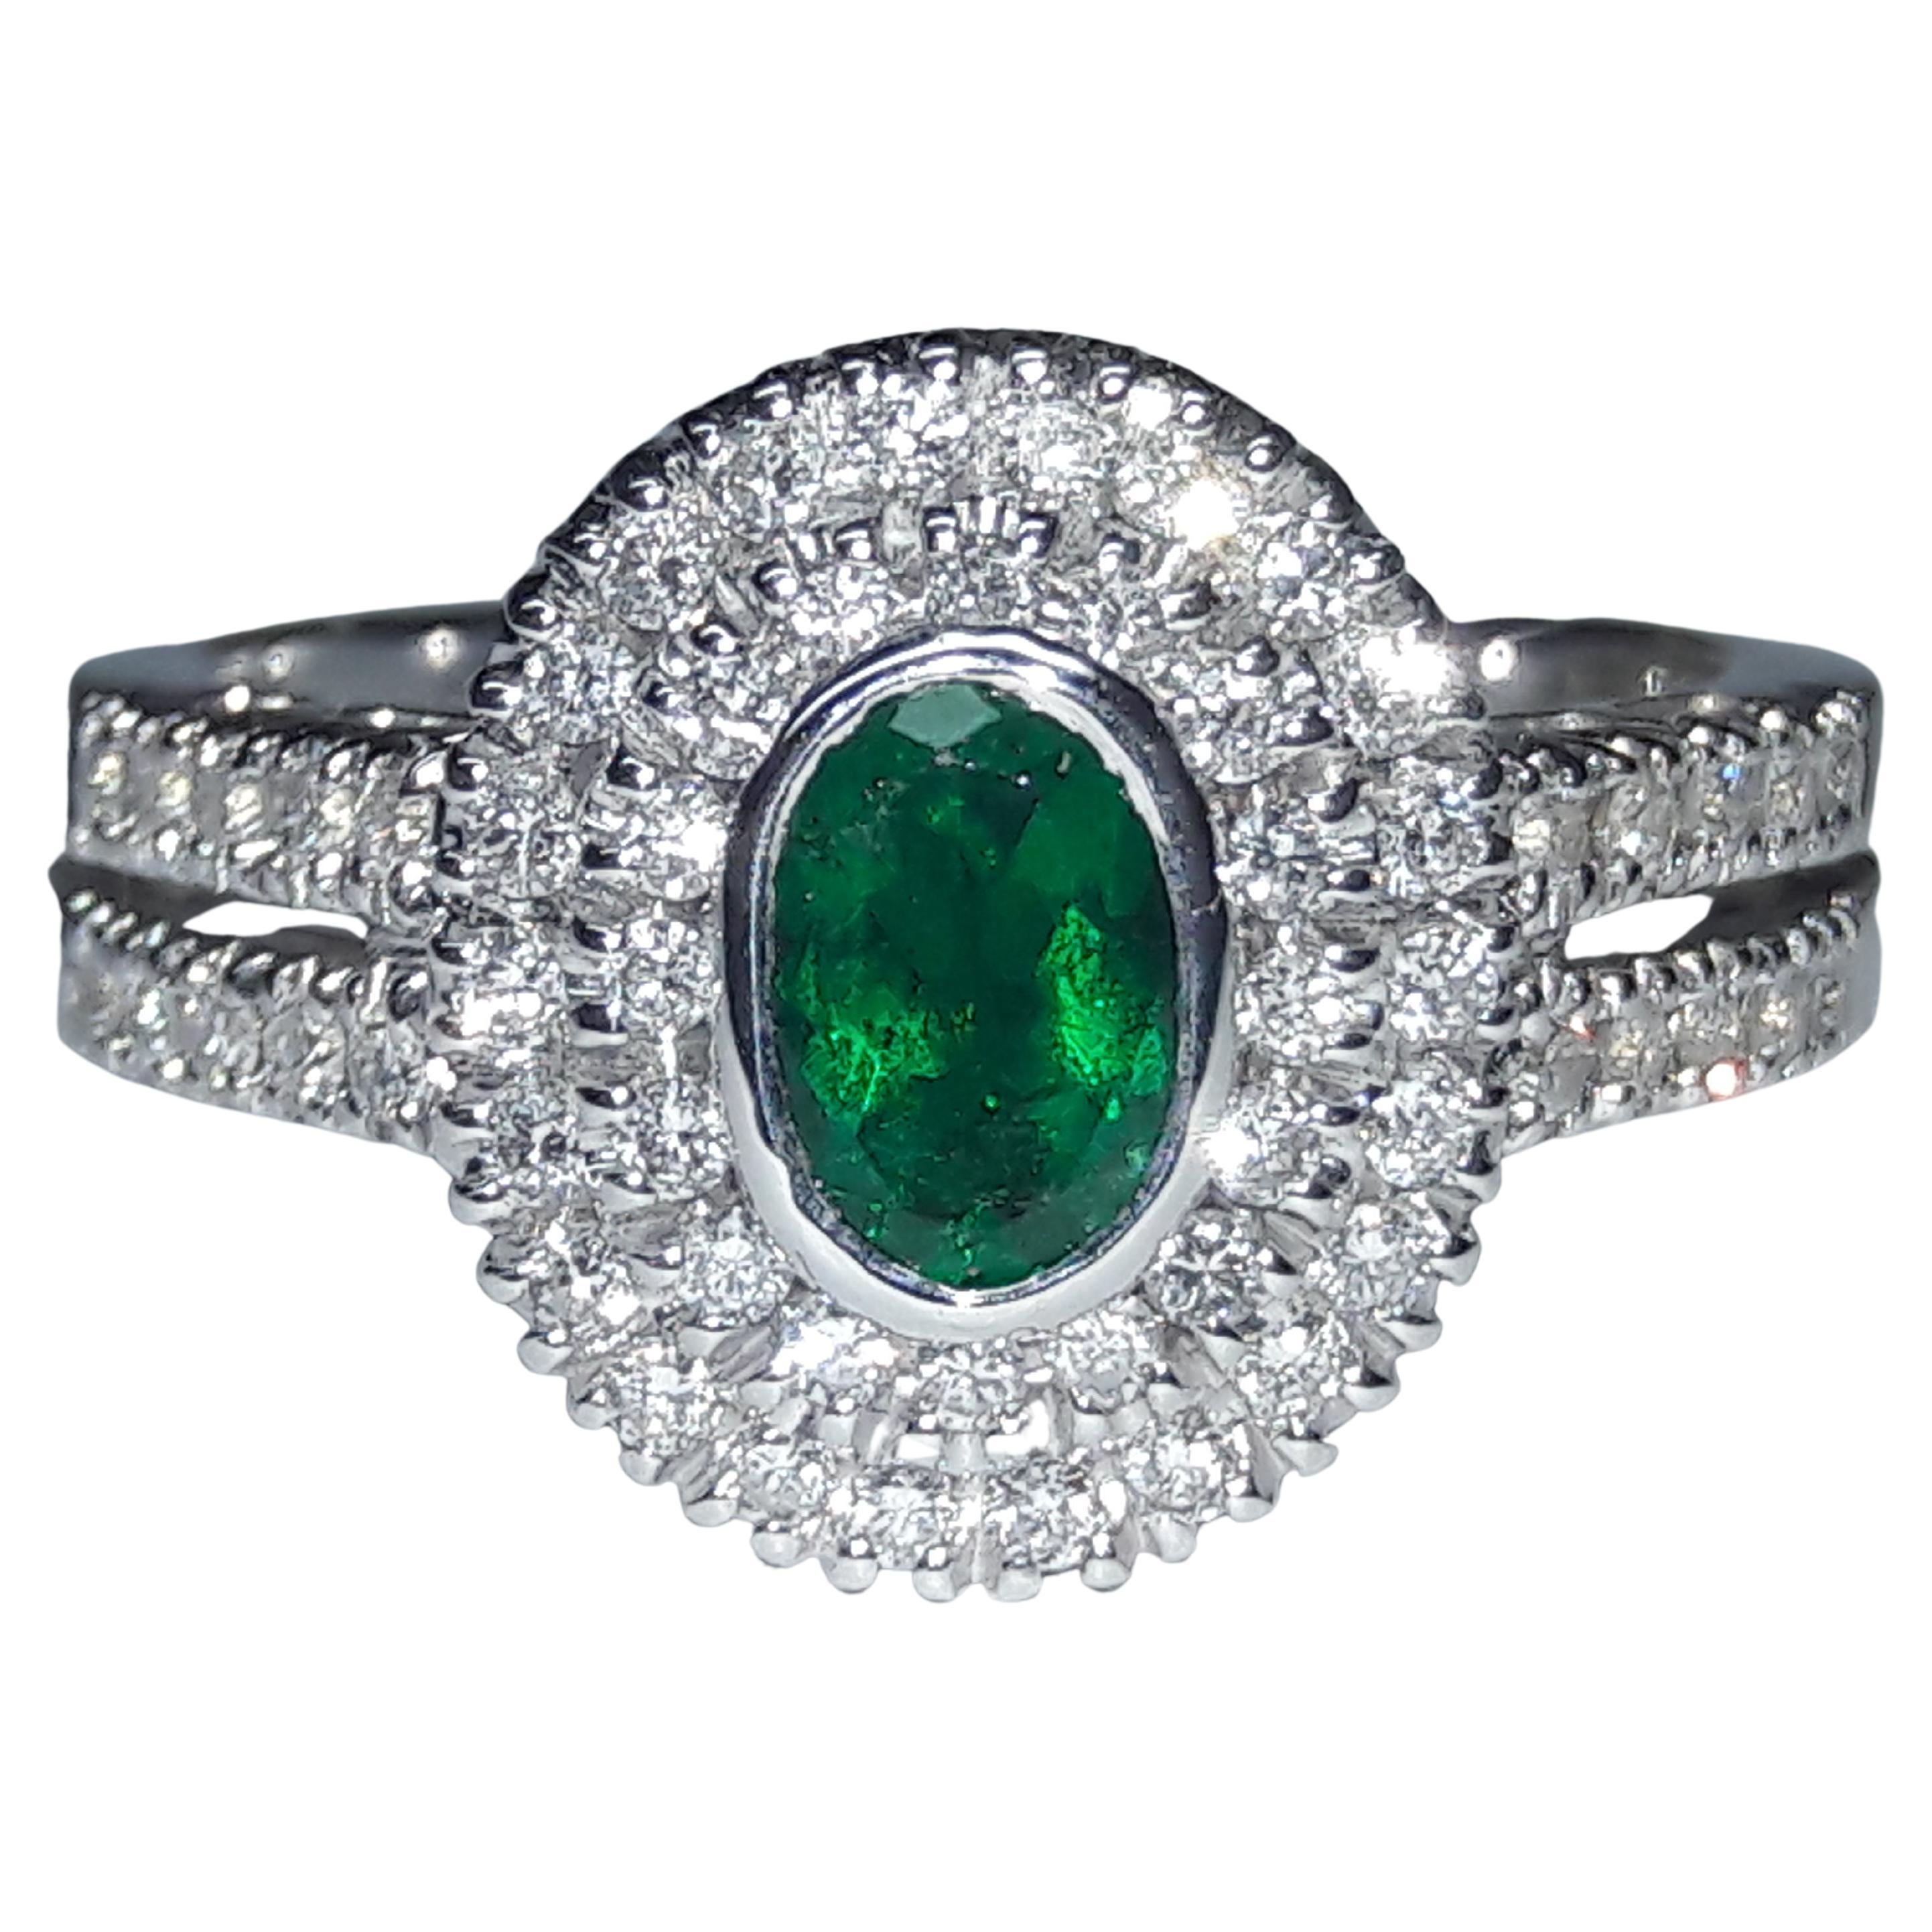 0.44 Karat natürlicher ovaler Smaragd 0,48 Karat weiße Diamanten 18 Karat Gold Ring
Dieser Ring wurde in Italien hergestellt und ist mit 750er Gold gepunzt, was dem amerikanischen 18-Karat-Gold entspricht.